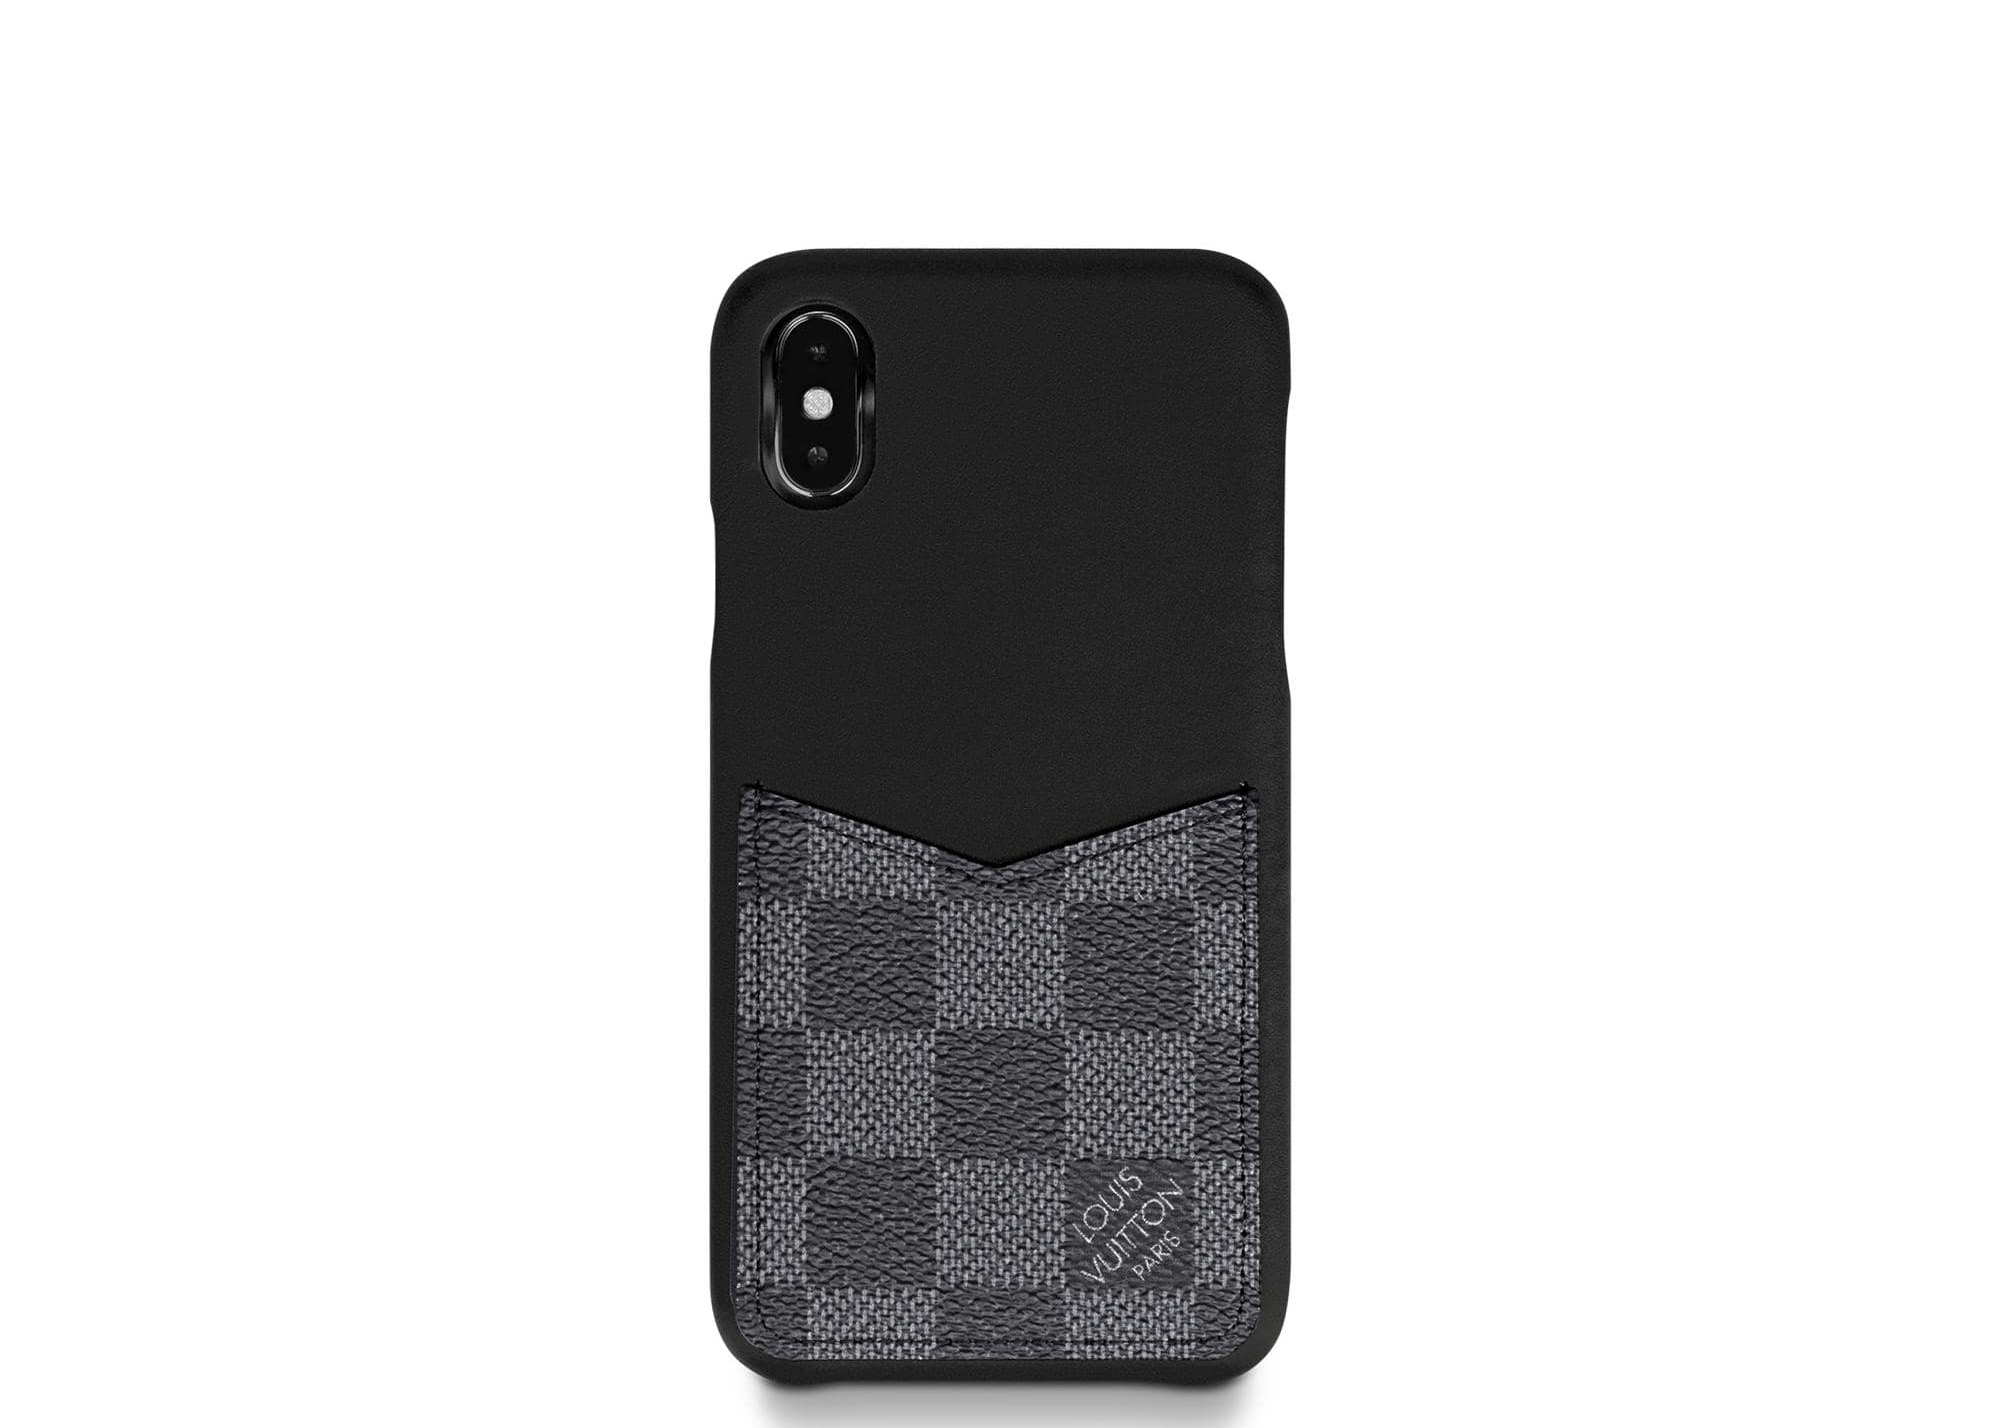 Louis Vuitton iPhone XS Maxスマホ/家電/カメラ